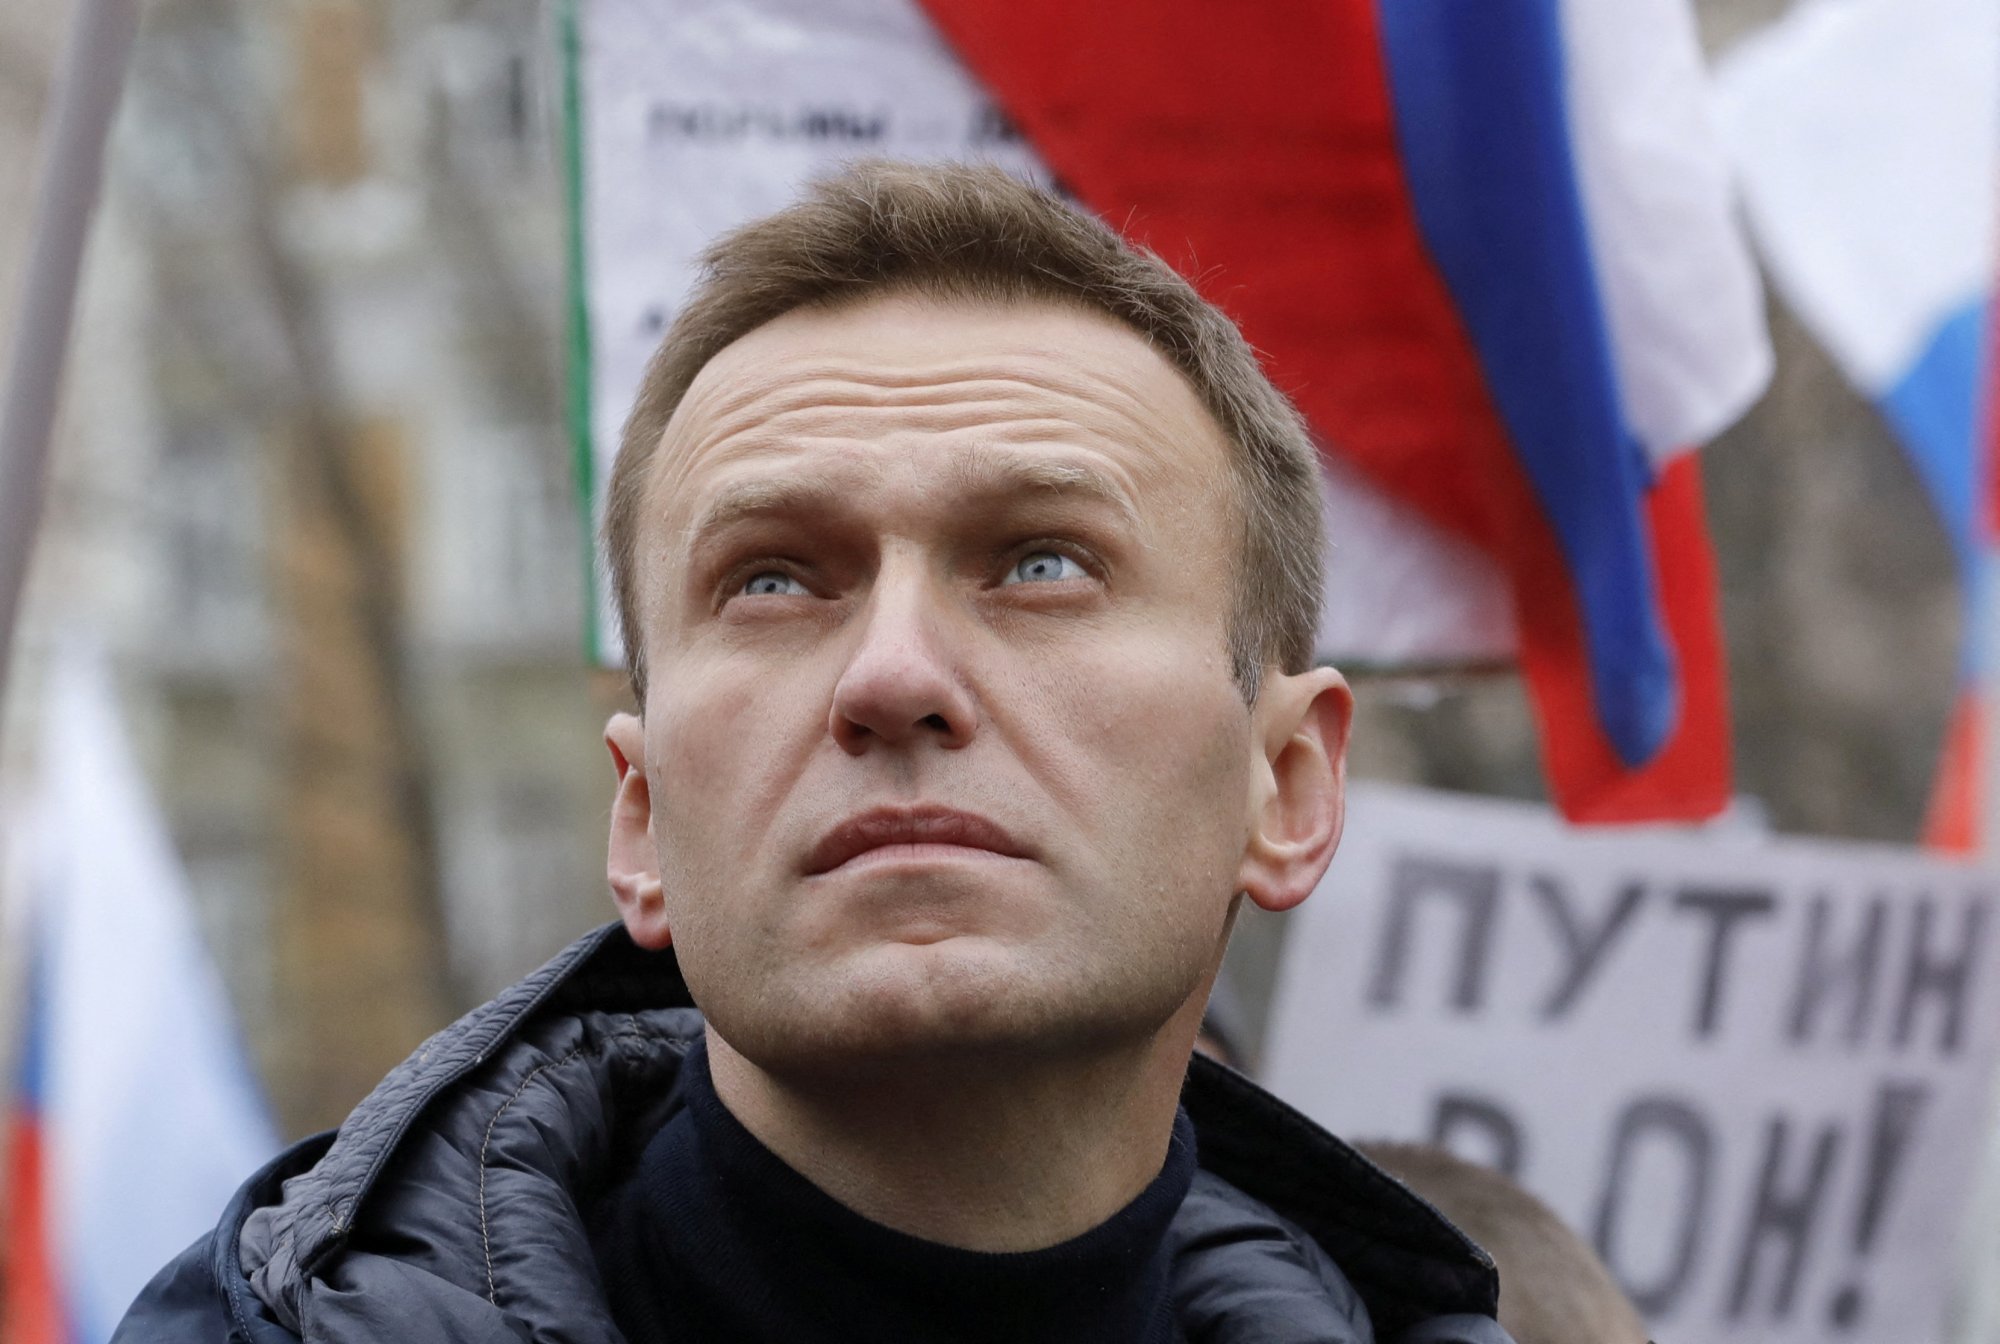 ΕΕ: Εξετάζει νέες κυρώσεις σε βάρος της Ρωσίας για τον Ναβάλνι